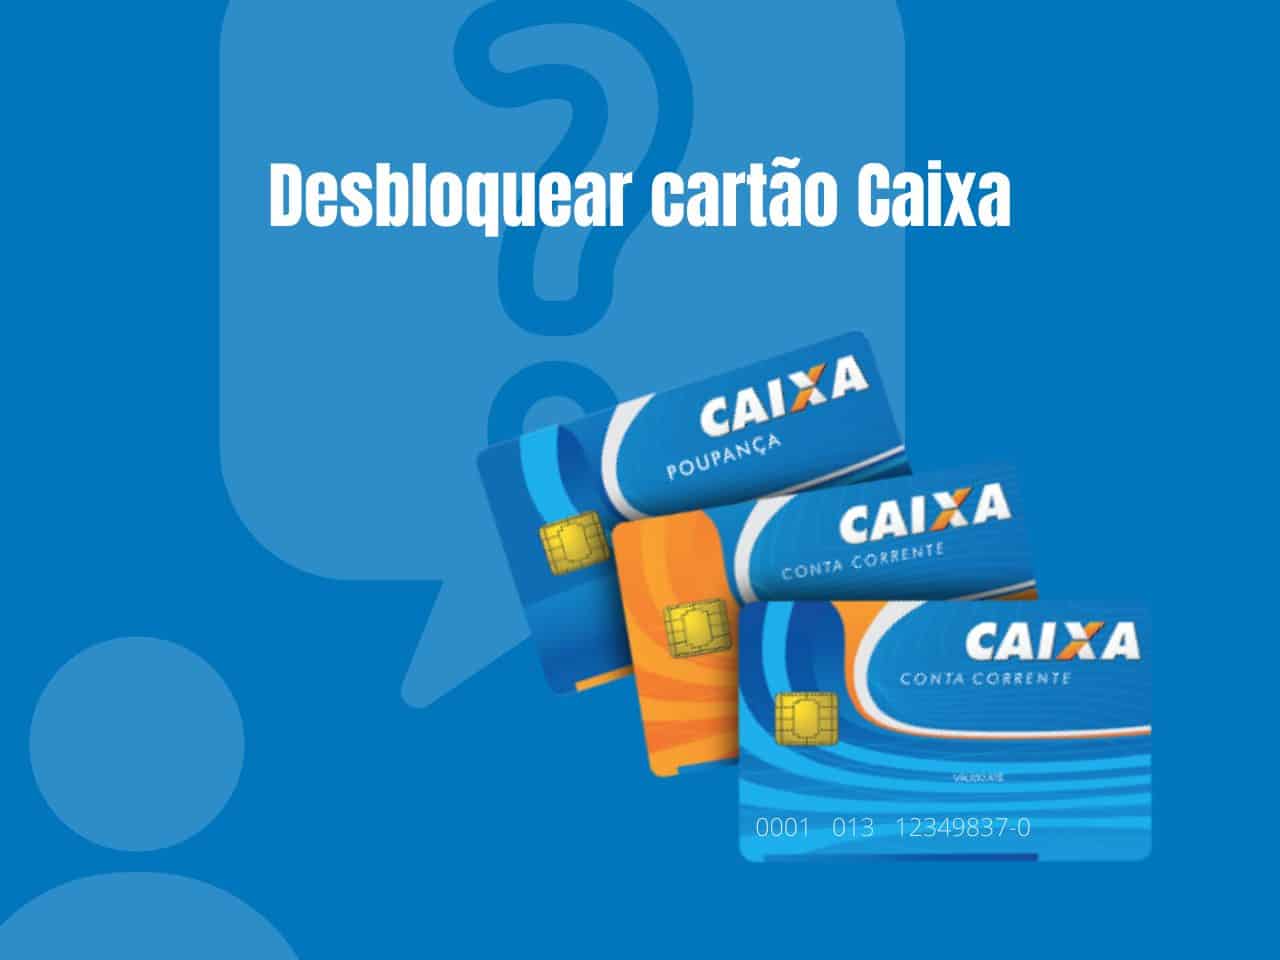 App Cartões CAIXA